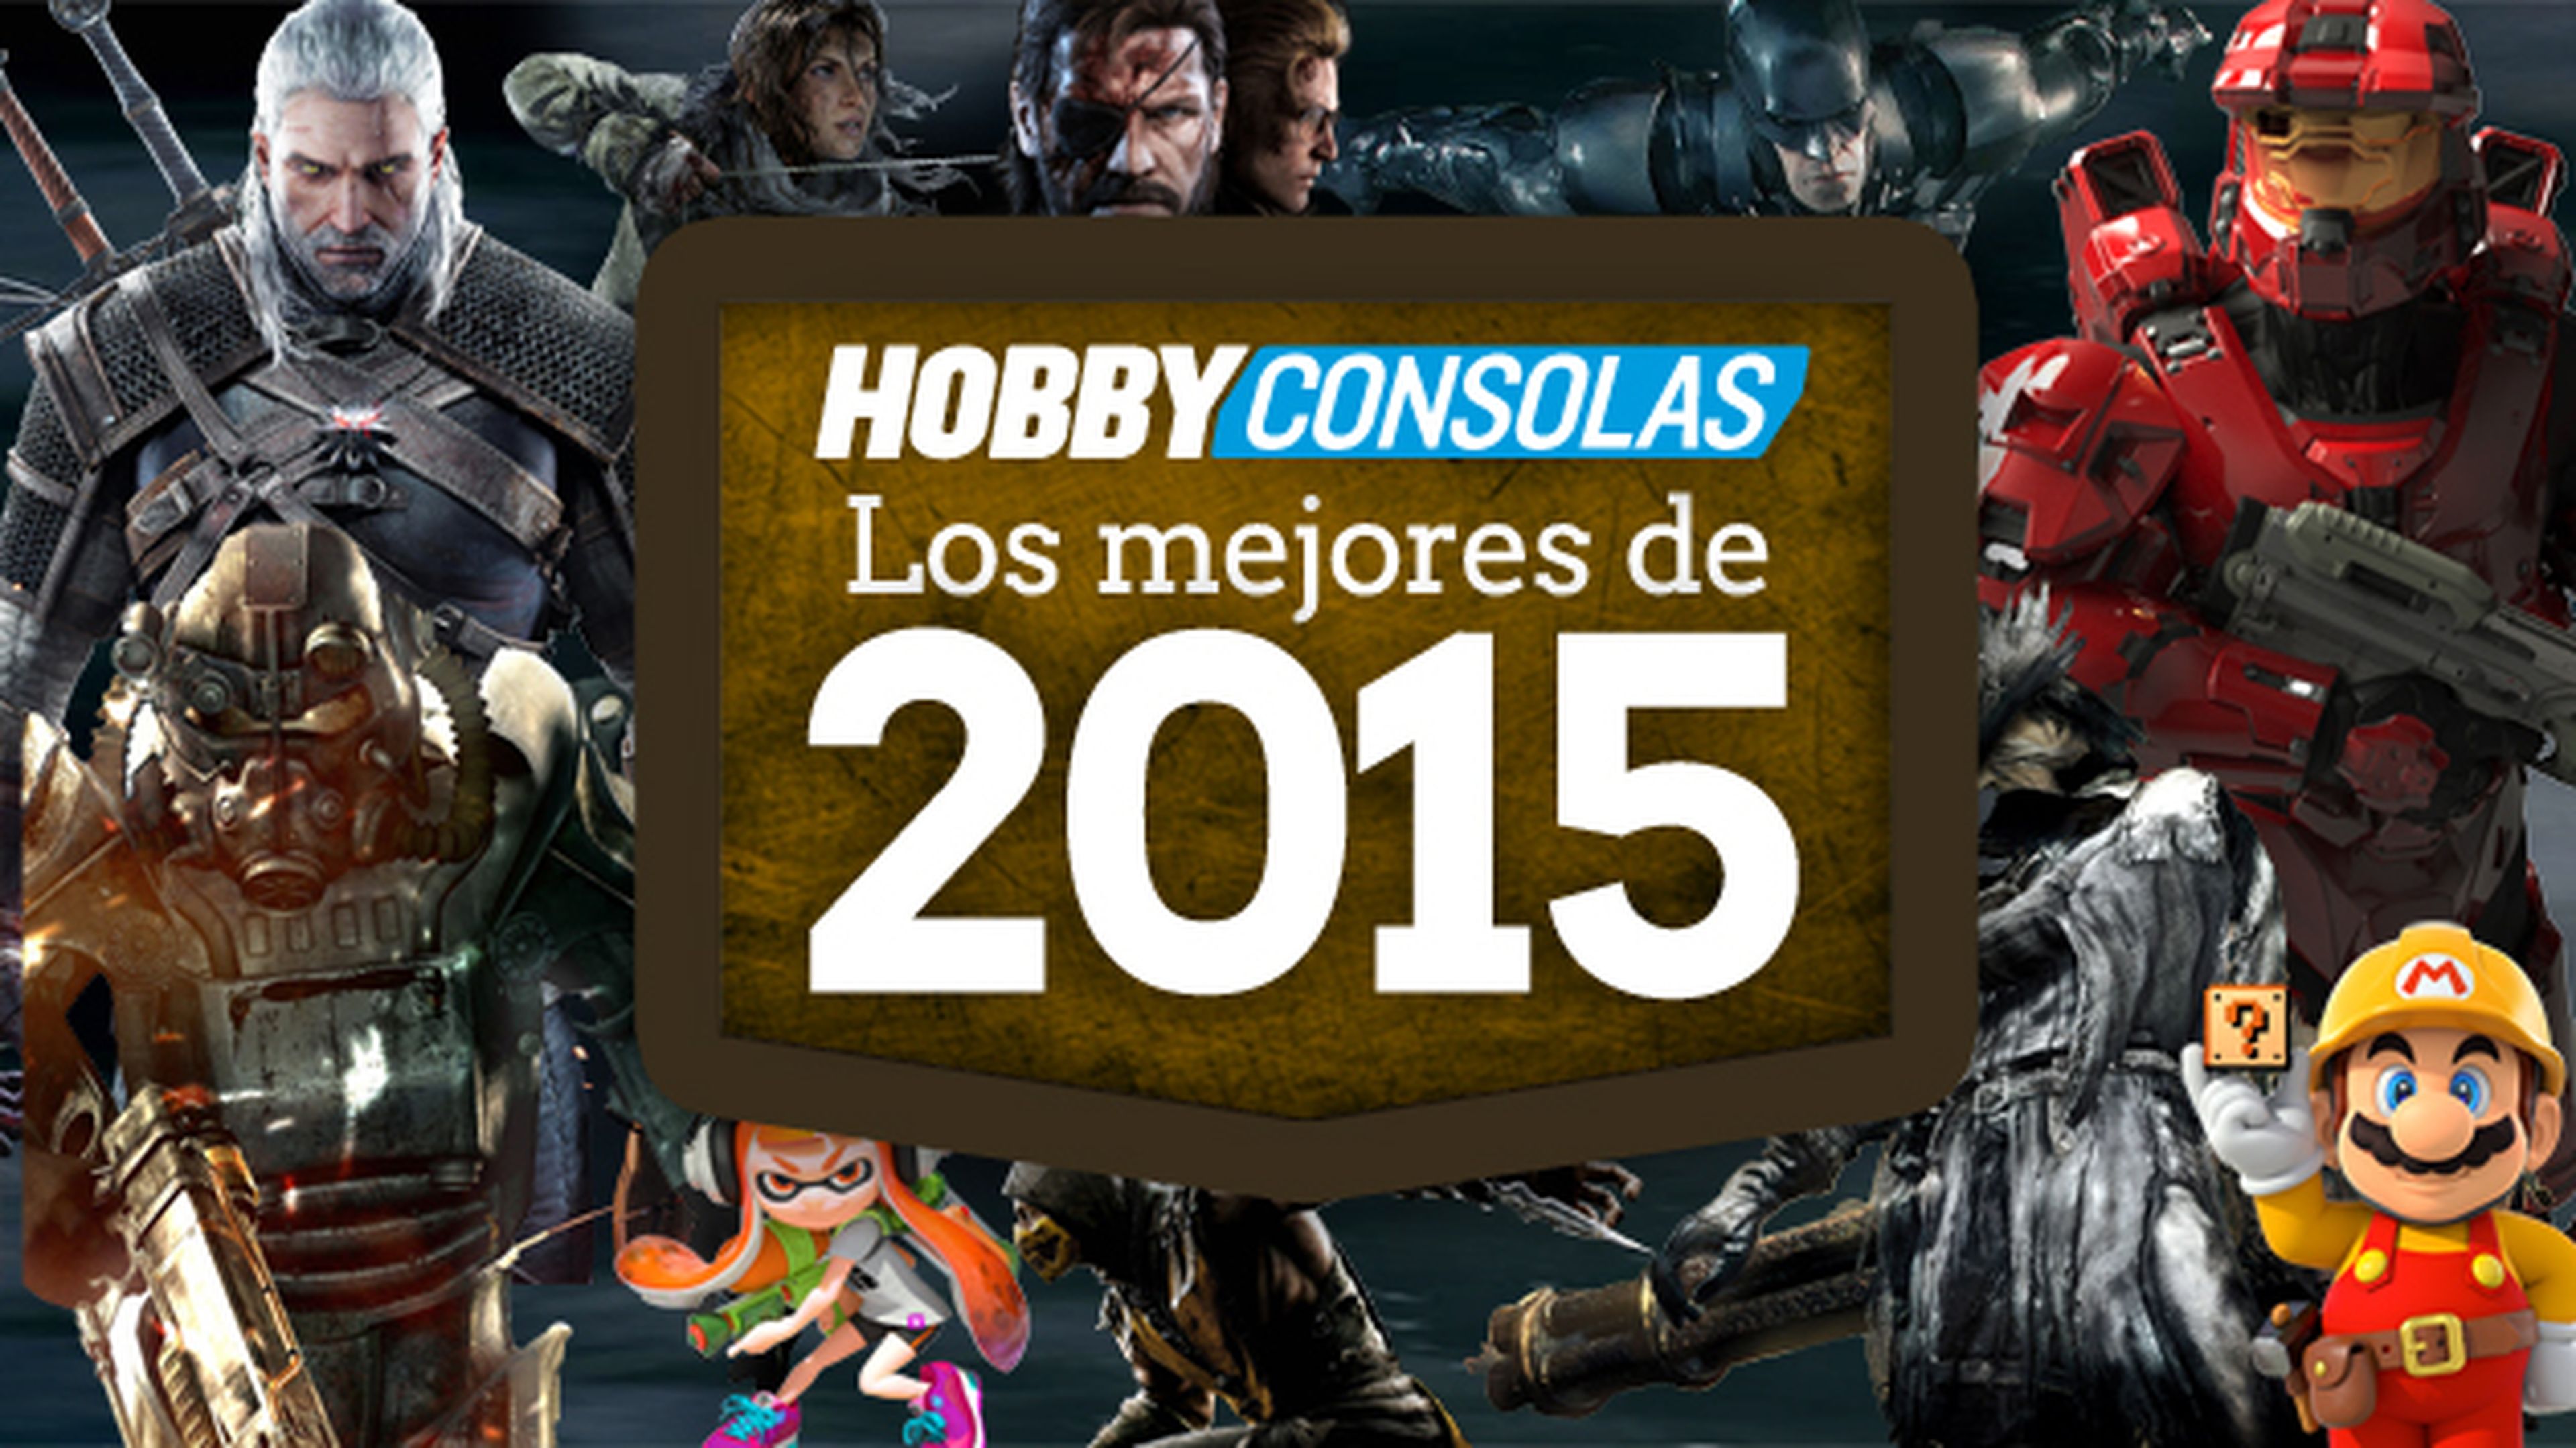 Los mejores juegos de 2015 - La opinión de HobbyConsolas.com